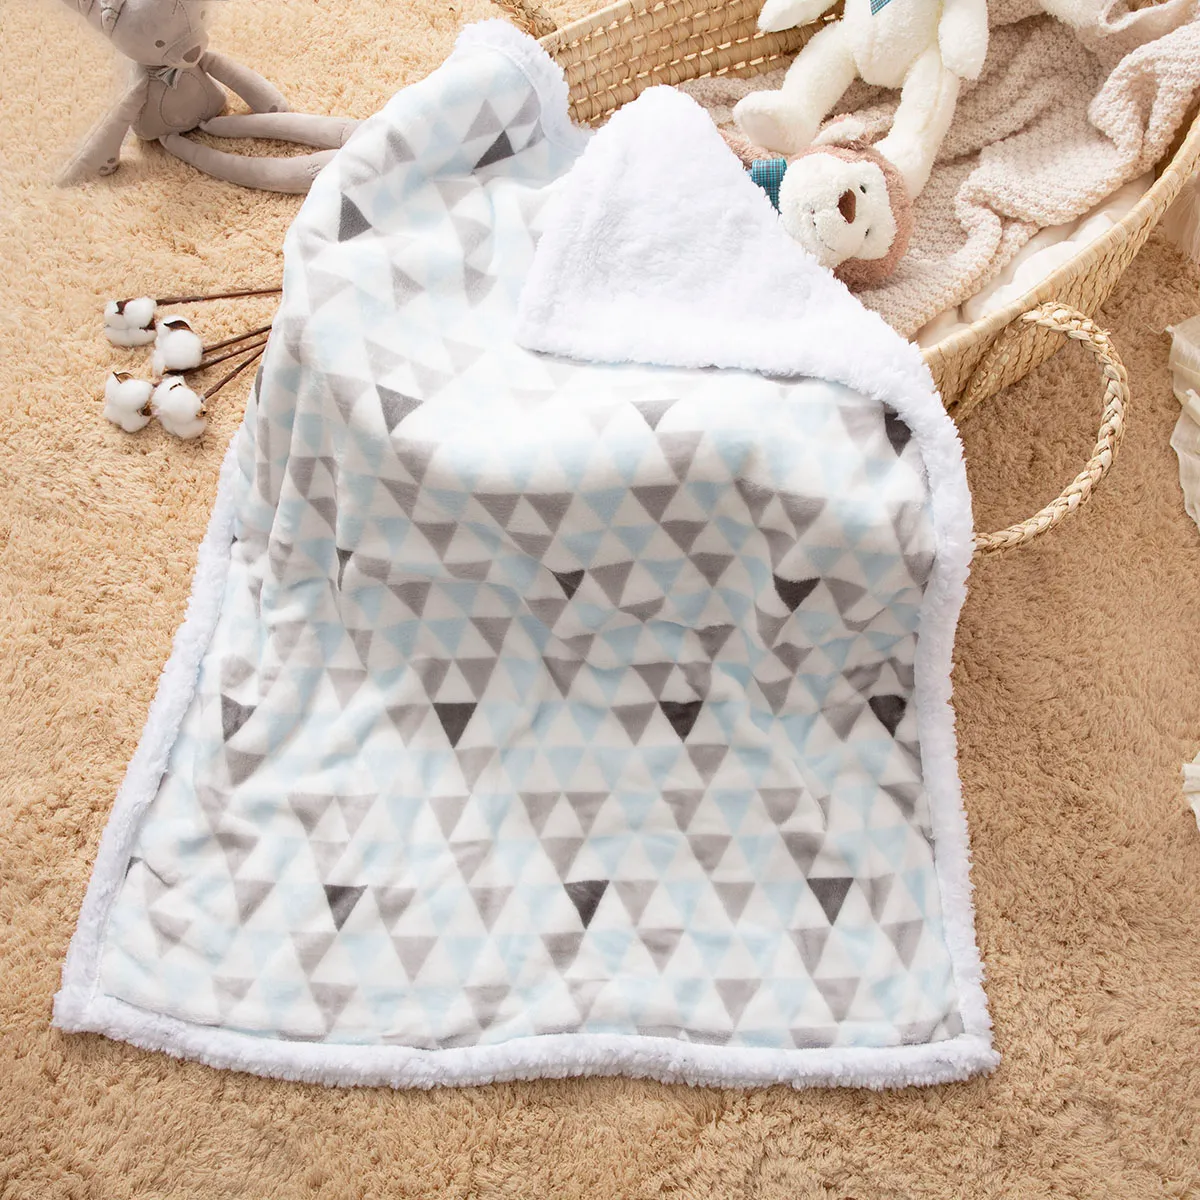 couvertures thermiques pour bébés motif géométrique couverture épaisse lavable douce couette literie pour enfants Bleu Clair big image 1